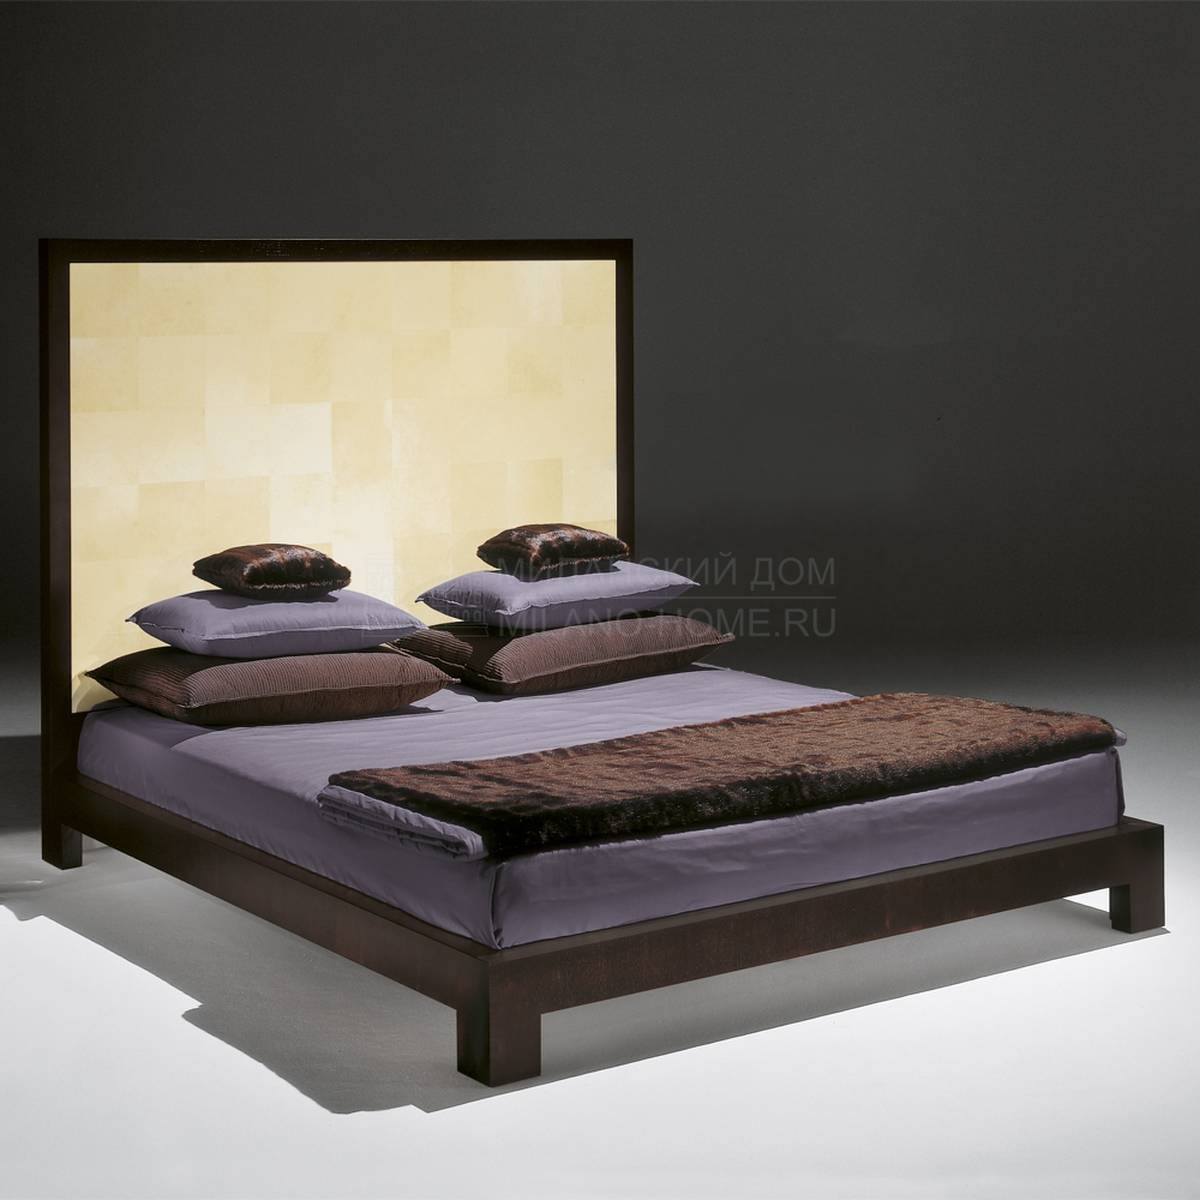 Кровать с деревянным изголовьем 2775 из Италии фабрики TURA